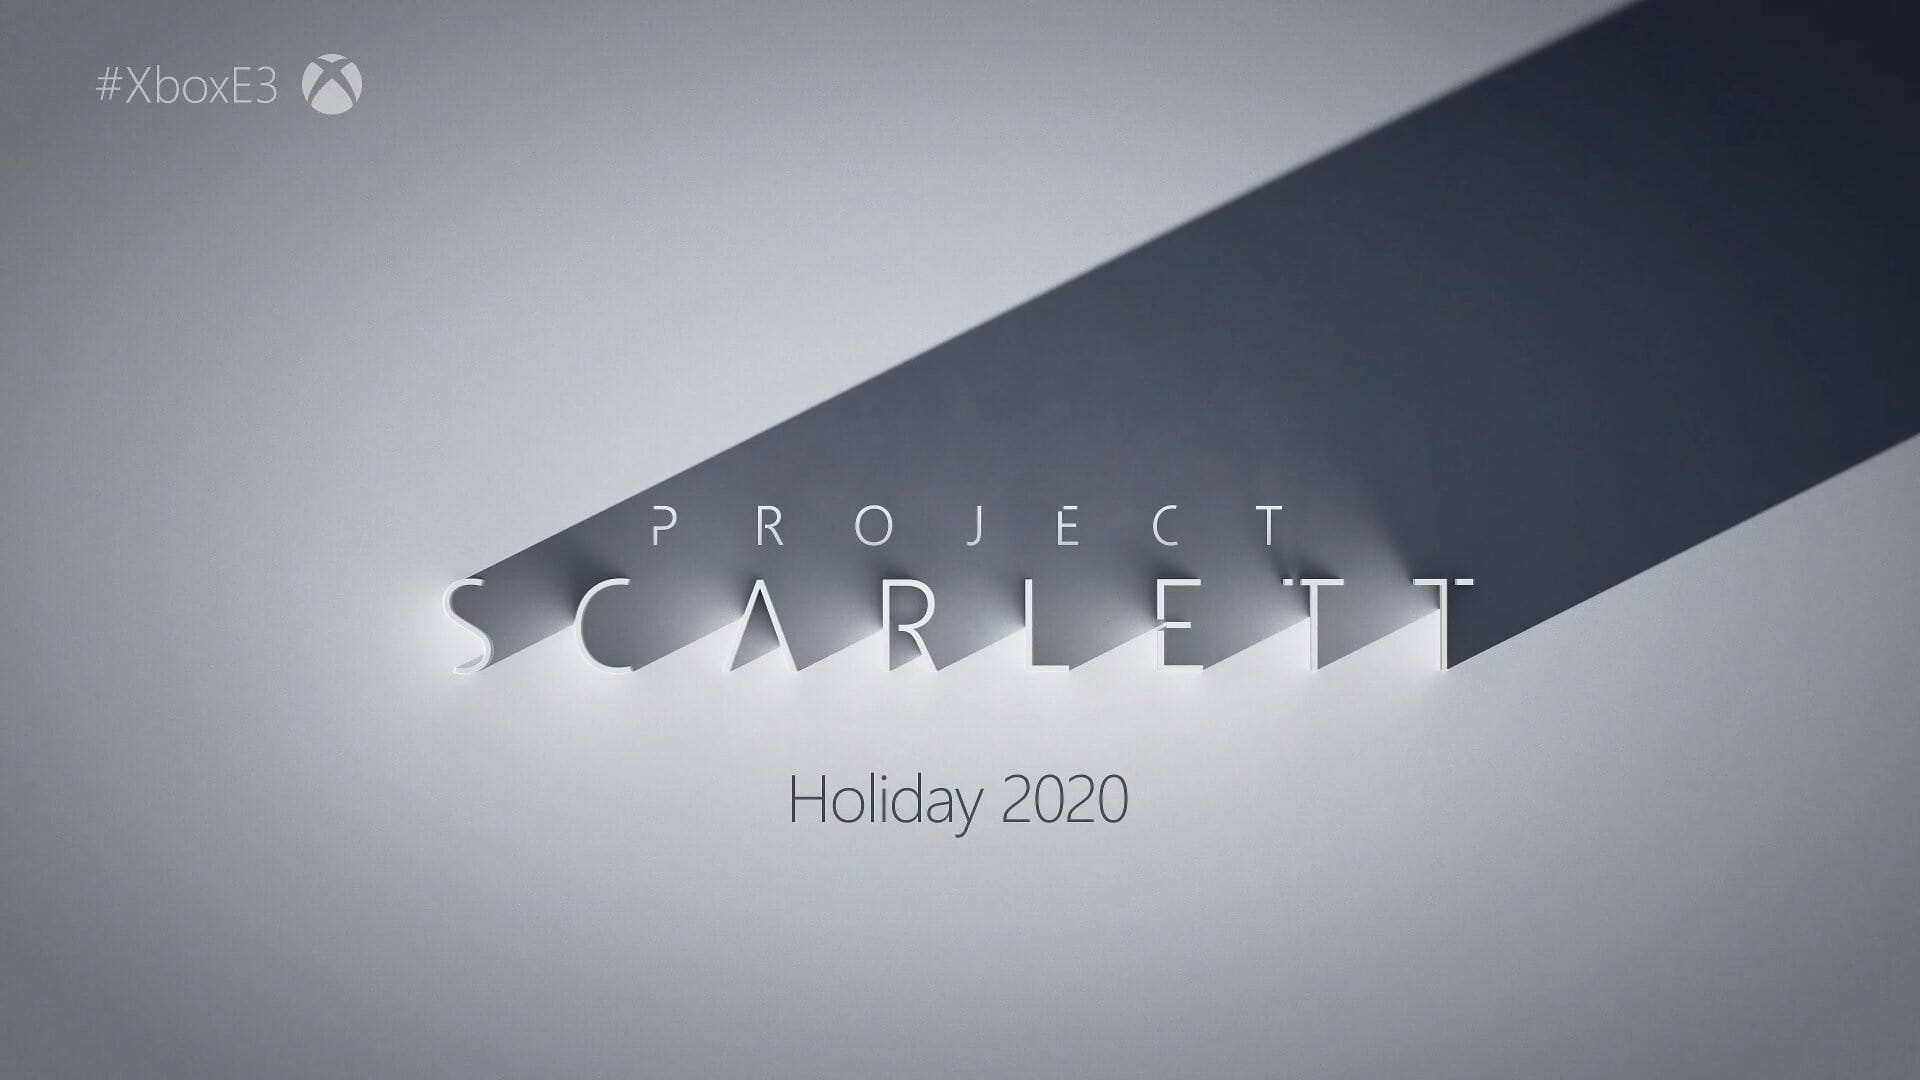 Xbox Project Scarlett ist Microsofts Verpflichtung, die Show zu erobern